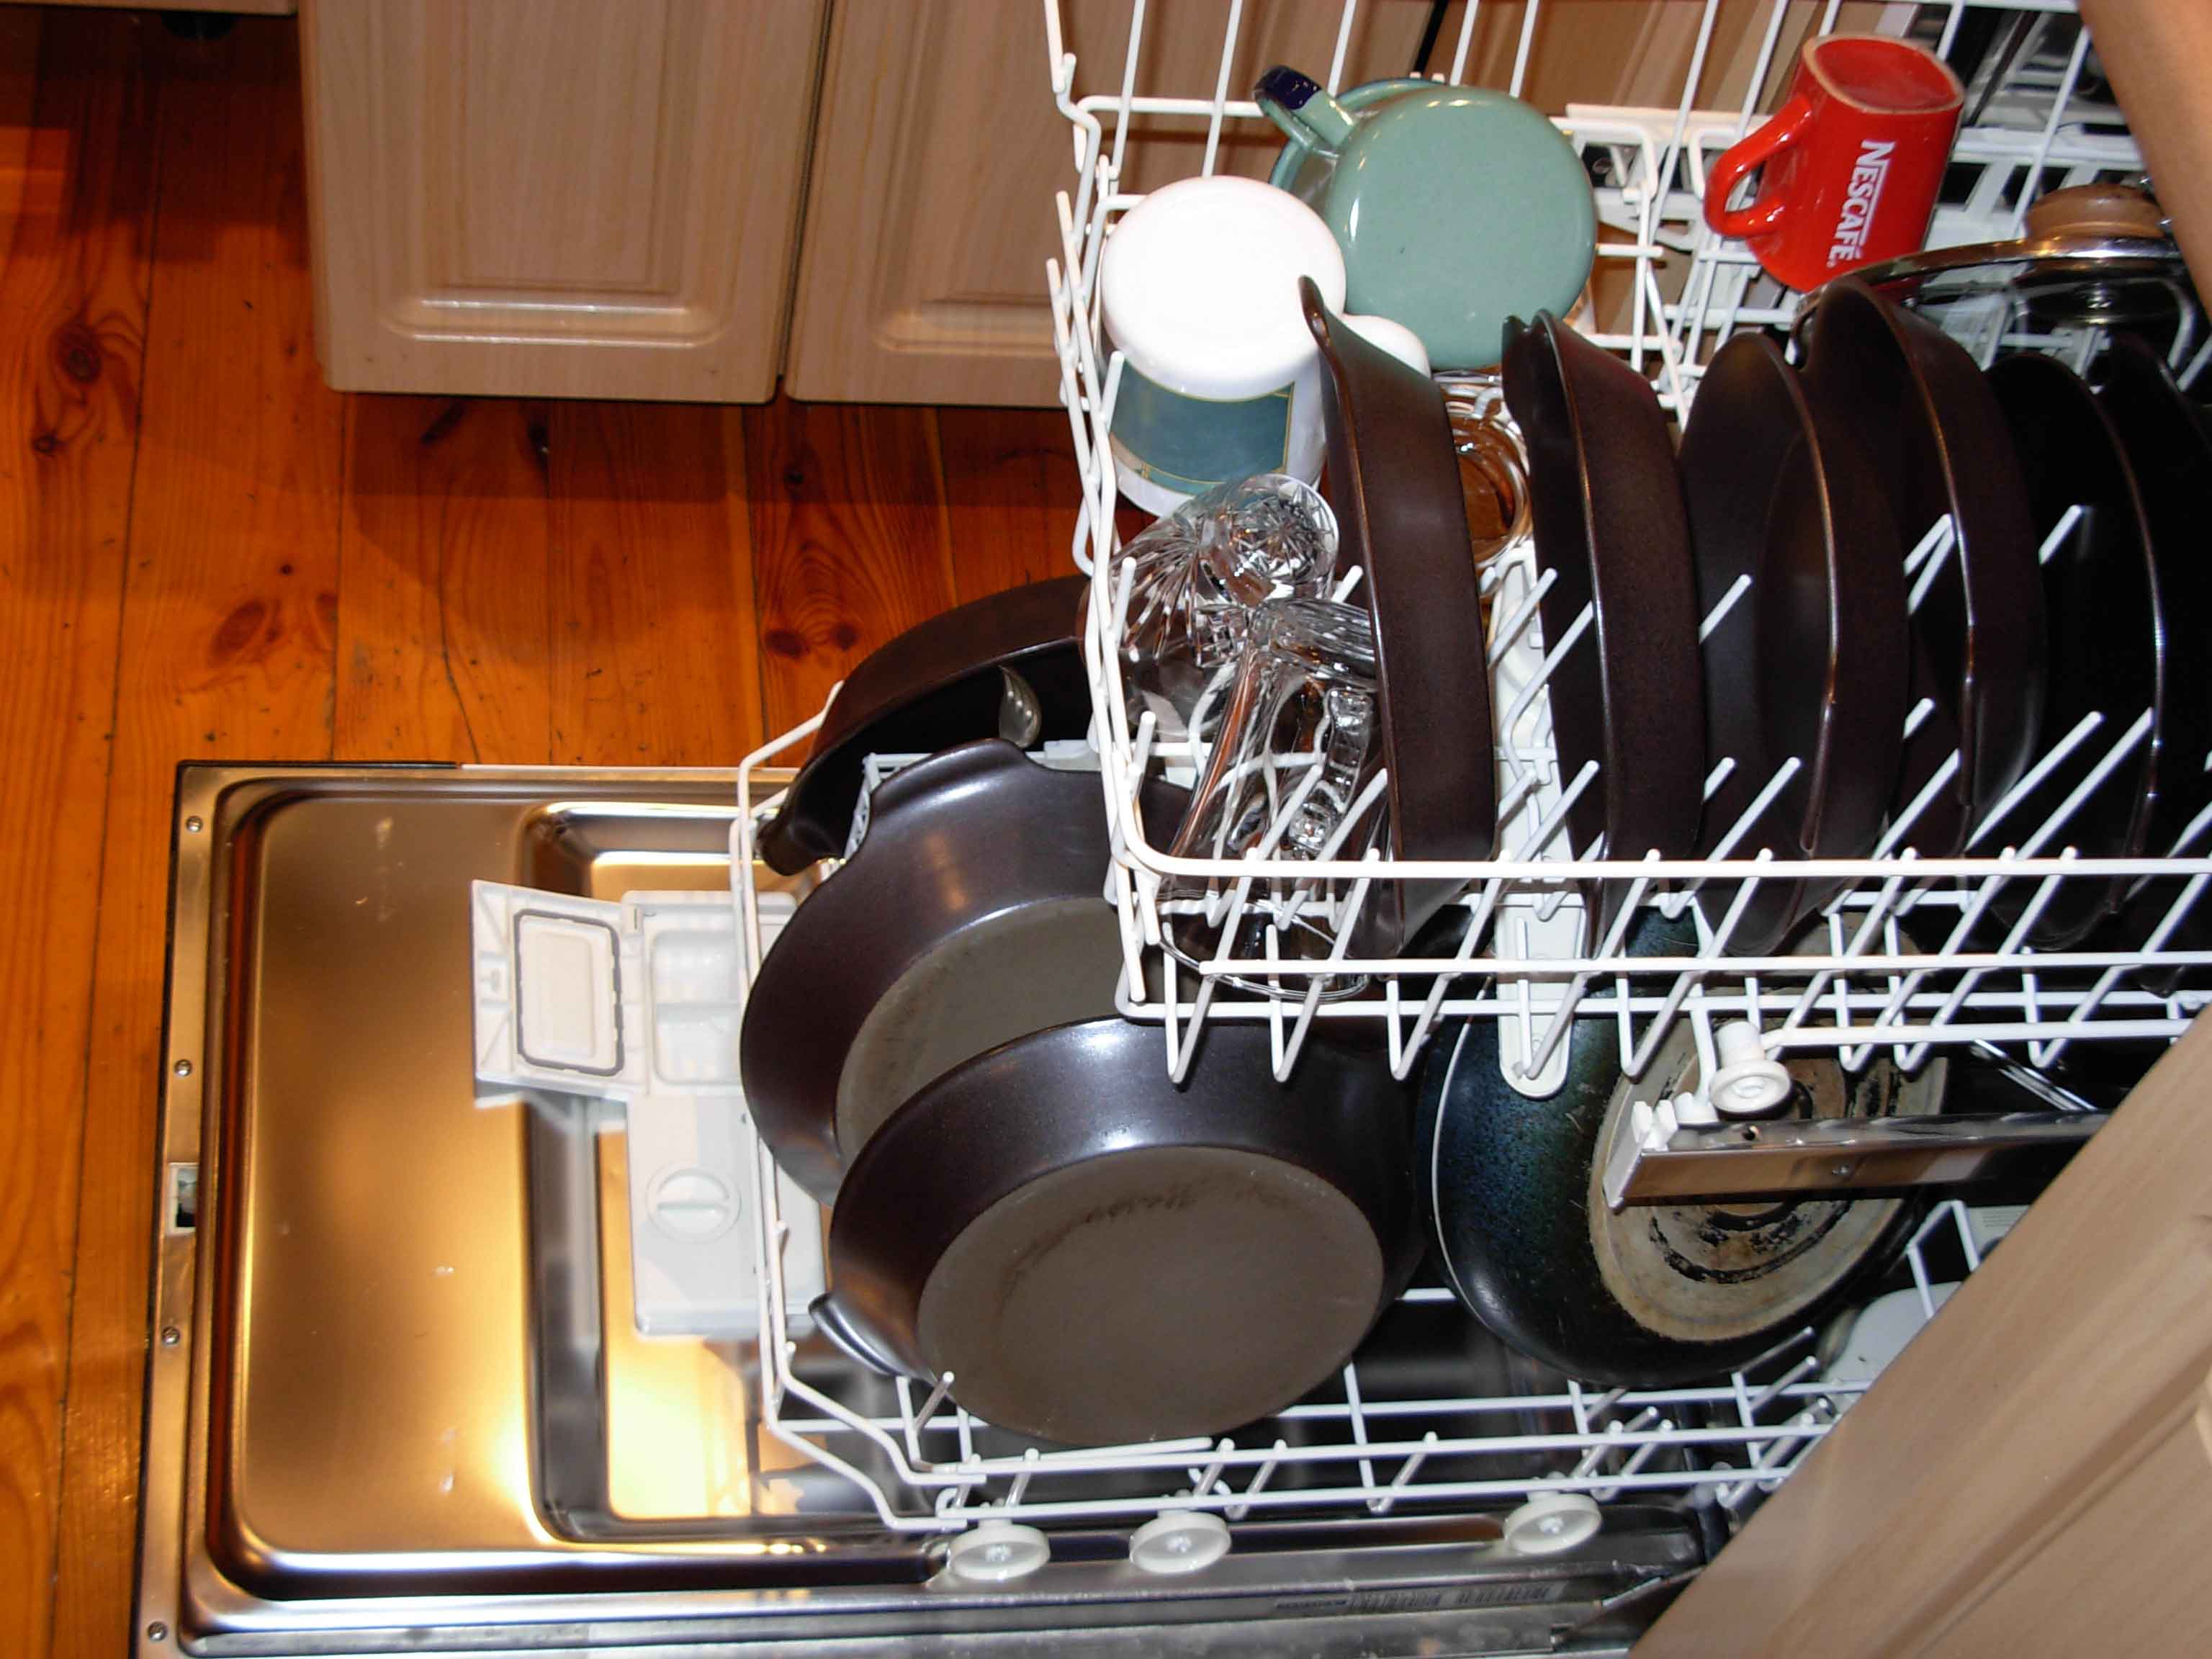 http://en.wikipedia.org/wiki/Dishwasher | wikipedia - anne mutfak alışkanlıkları